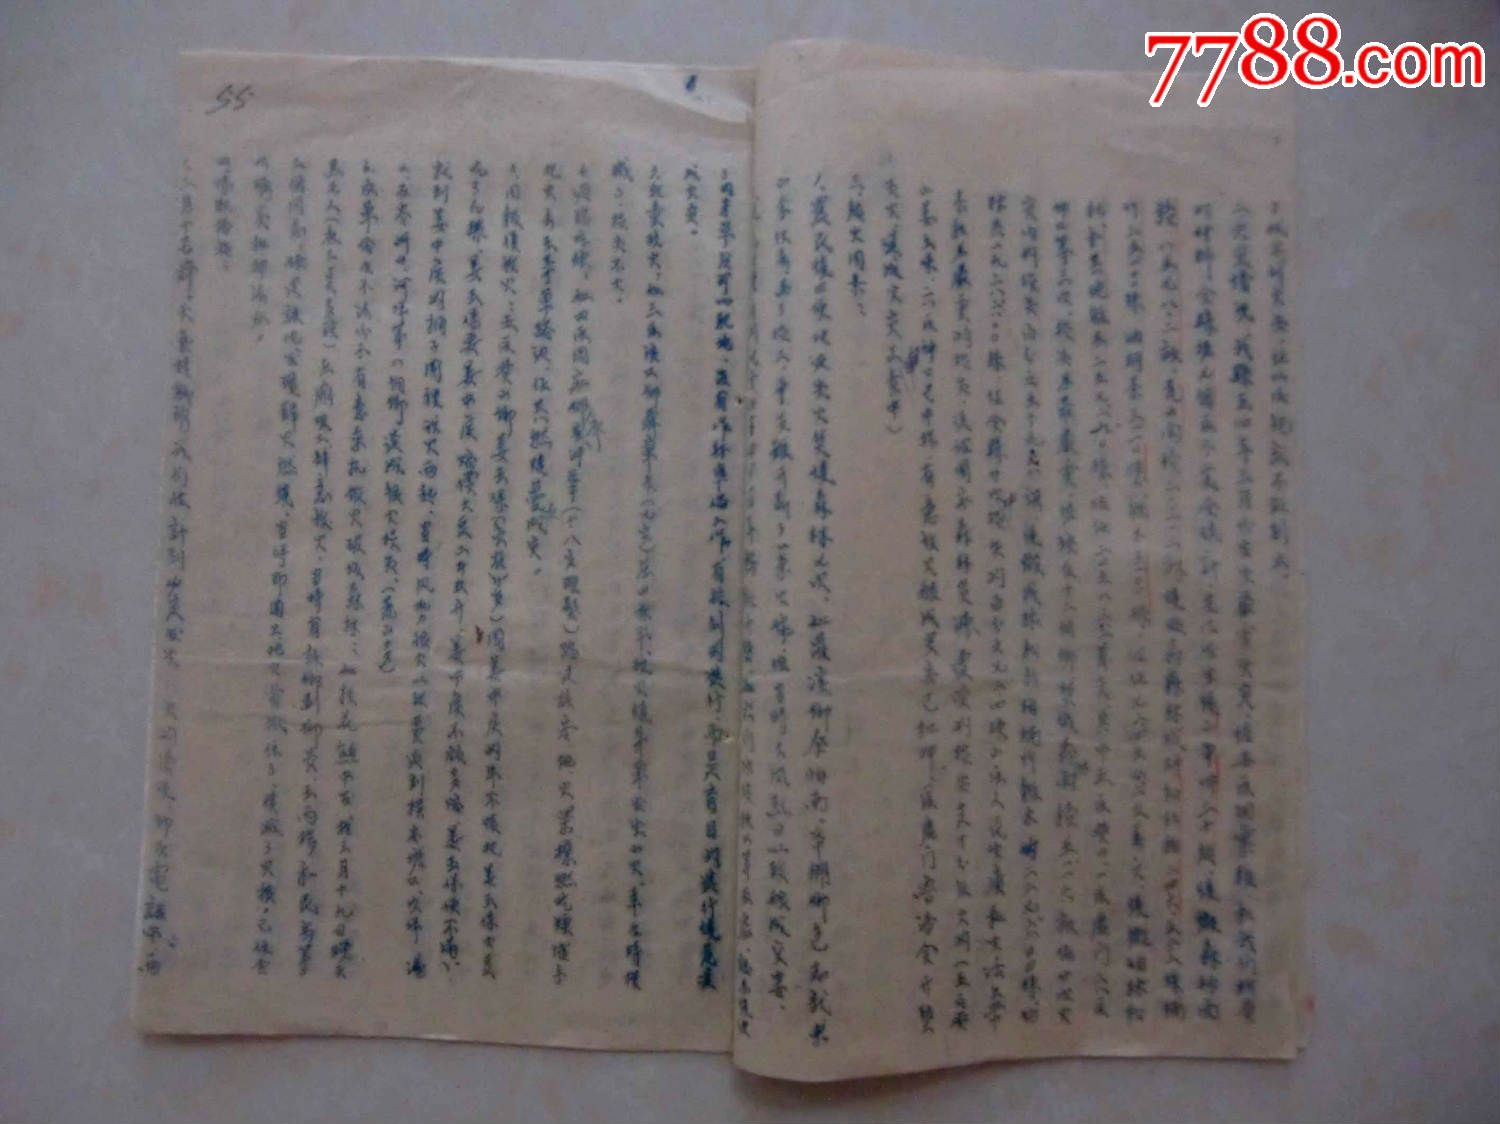 1954年崇阳县护林防火三月份工作总结-价格:5